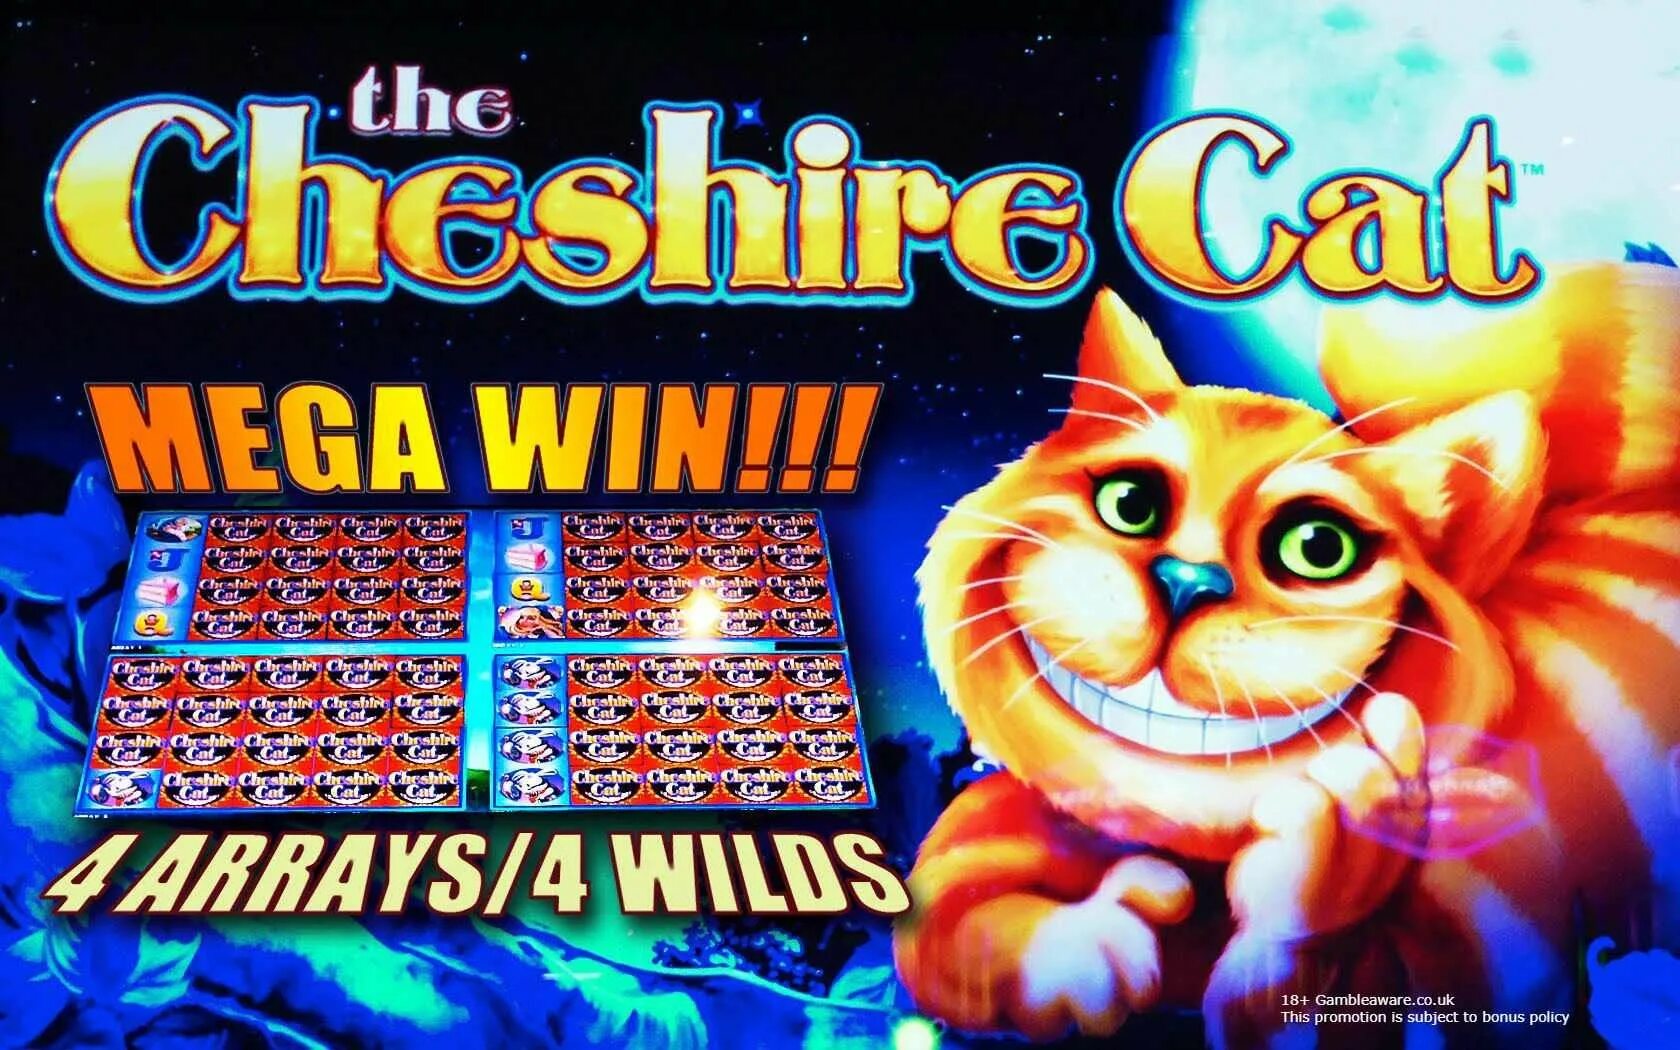 Casino cat official money cat fun. Котик в казино. Кошачье казино. Кот казино слоты. Слот с кошками в казино.